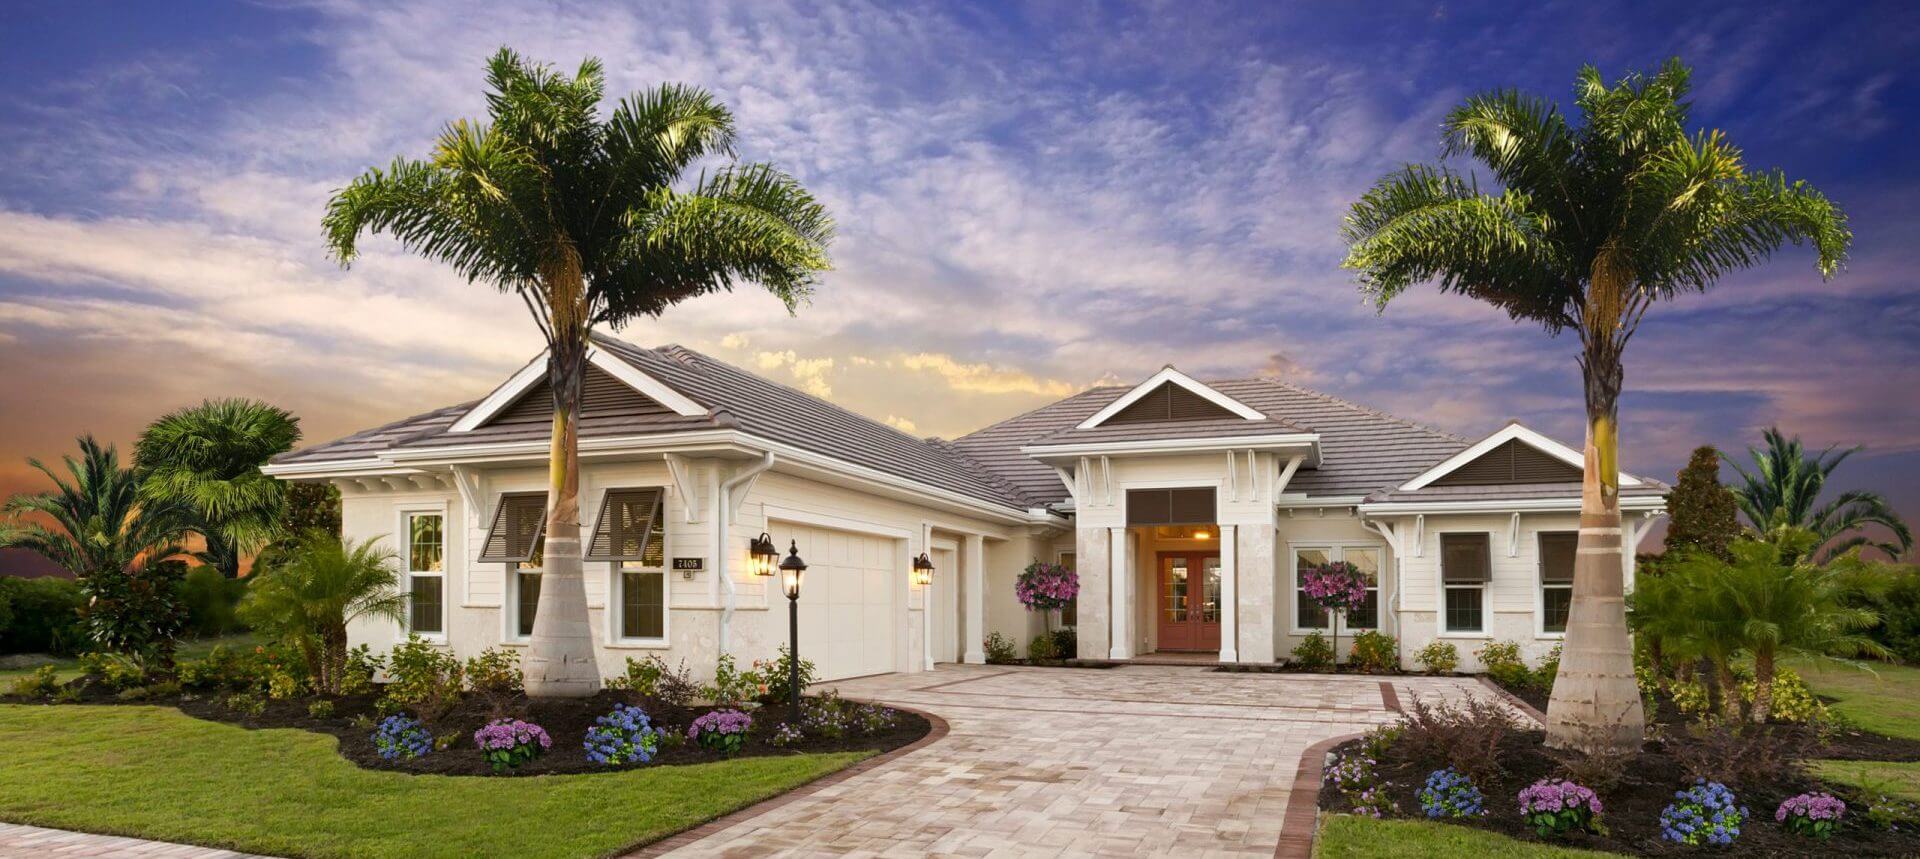 Lee Wetherington - Best custom Florida home builders